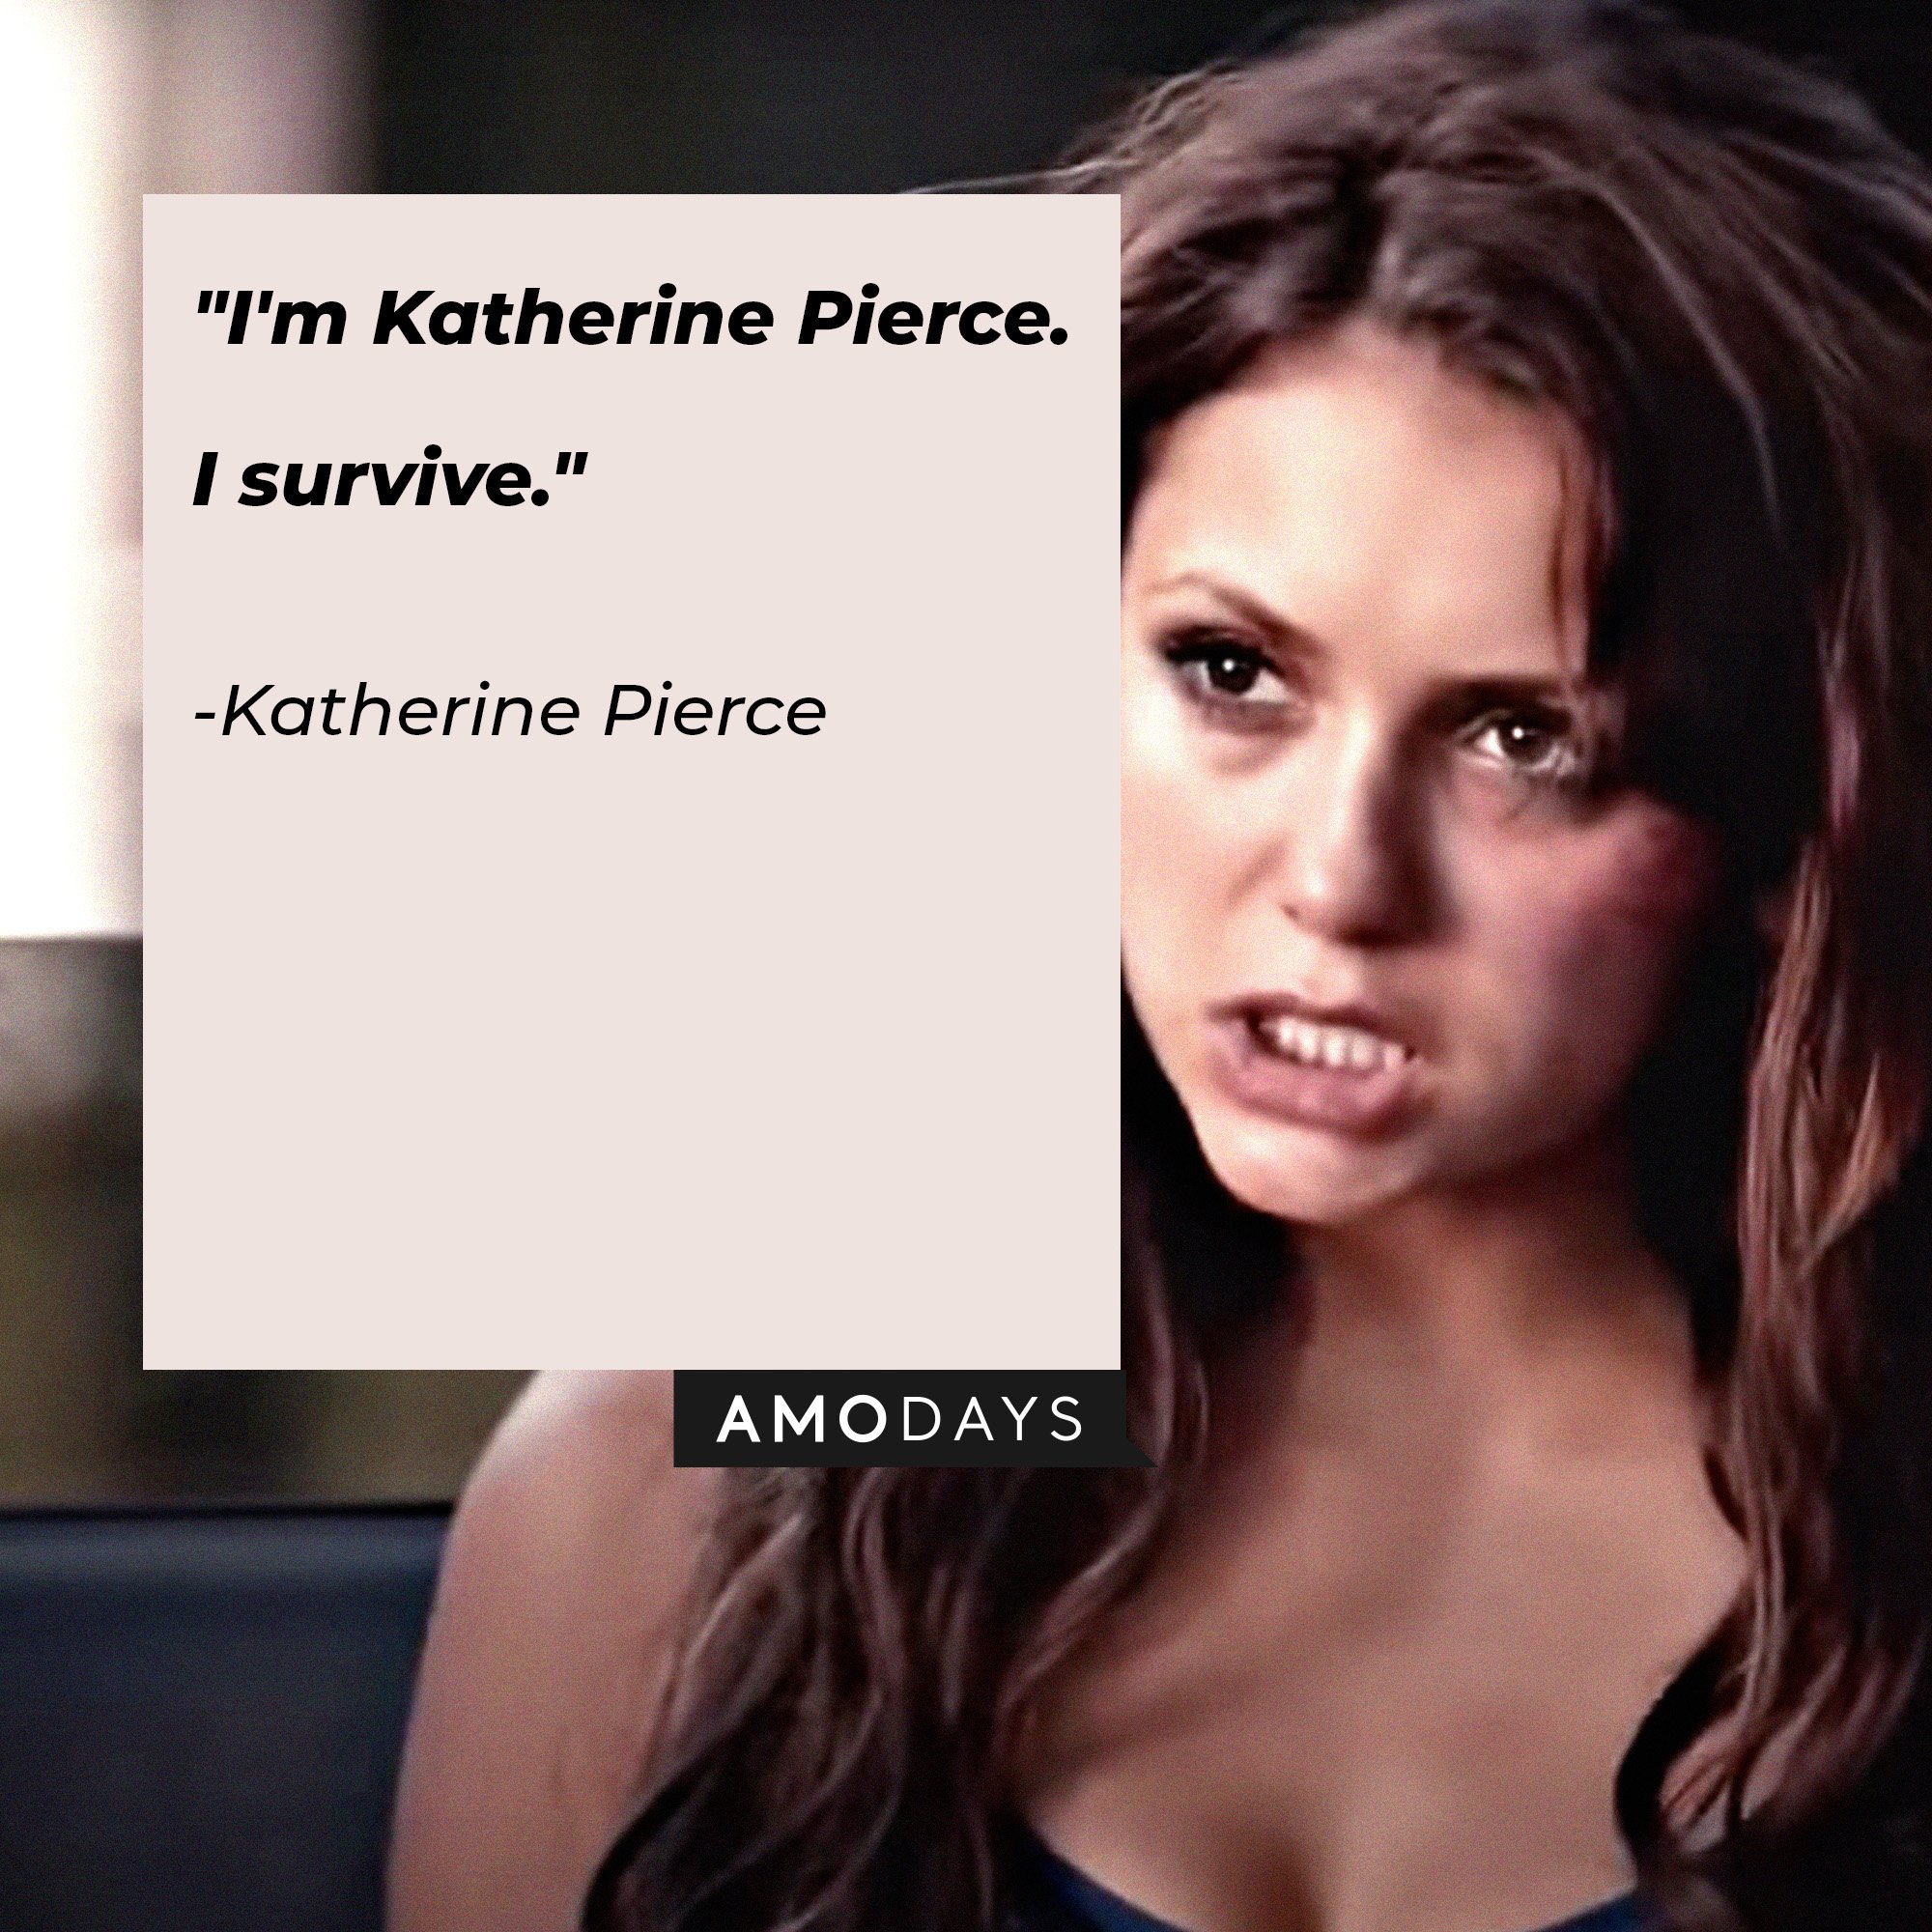 Katherine Pierce's quote: "I'm Katherine Pierce. I survive." | Image: AmoDays